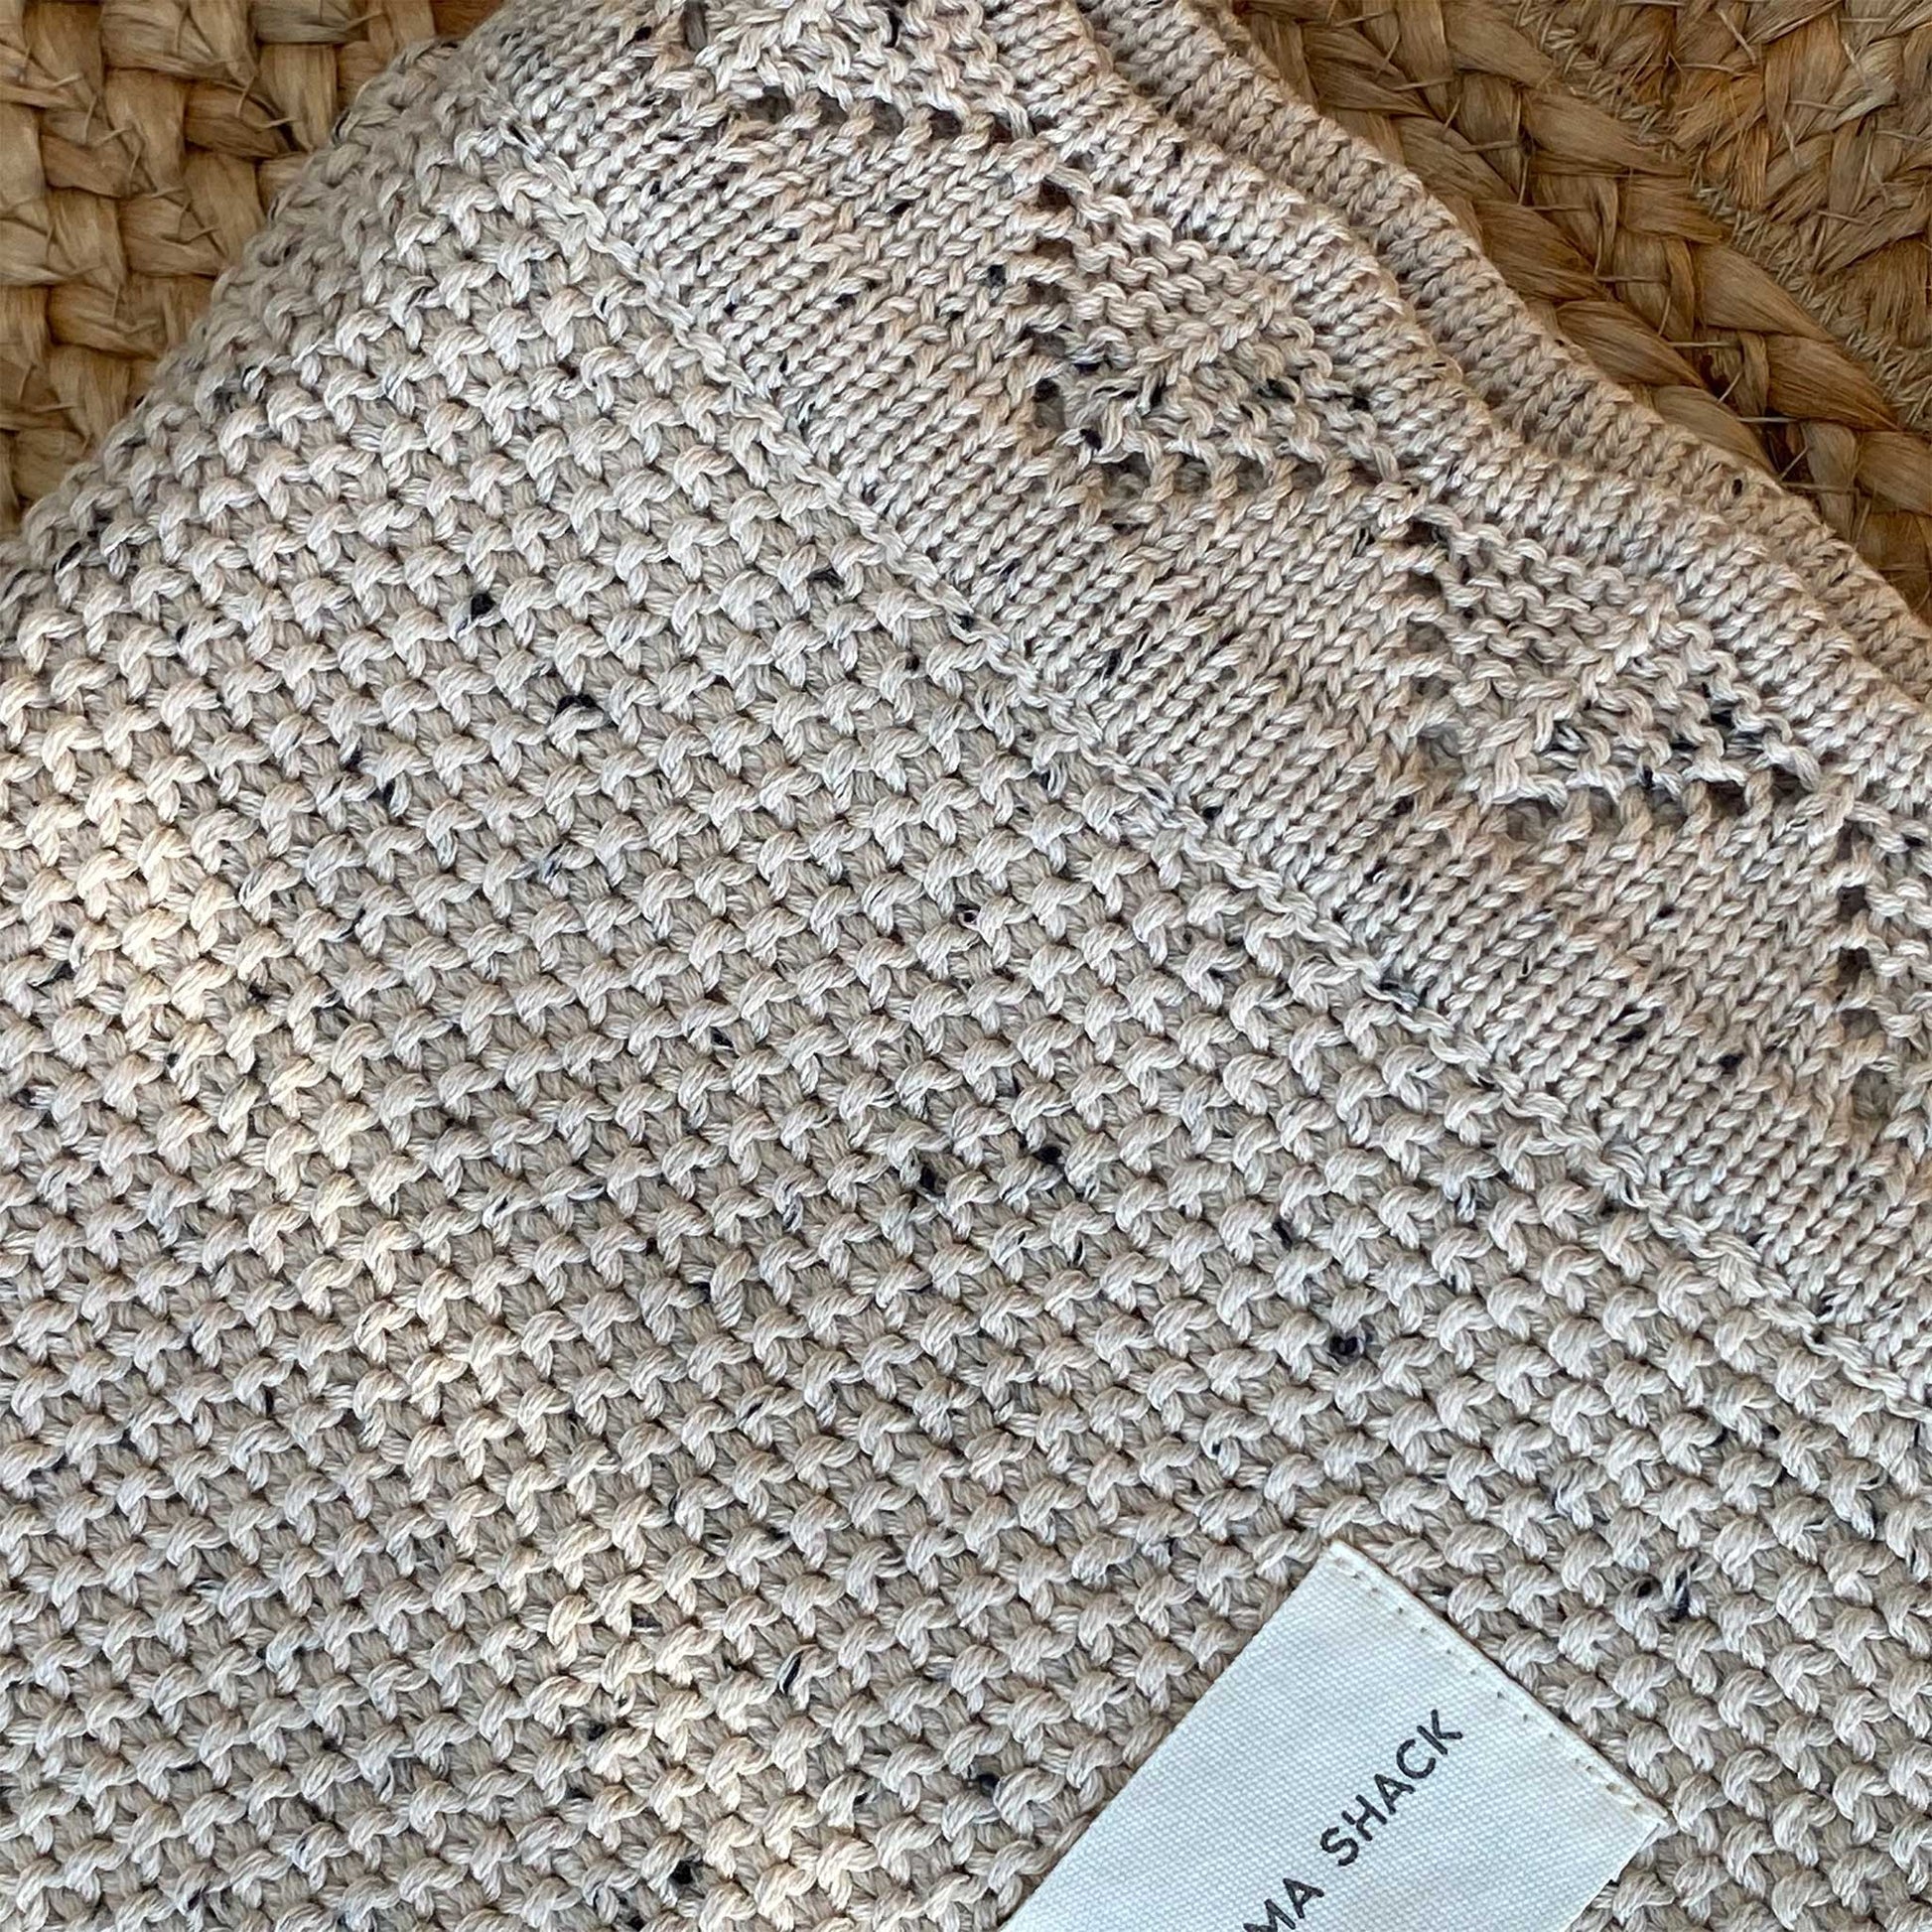 Vintage Knitted Blanket - Speckled Latte